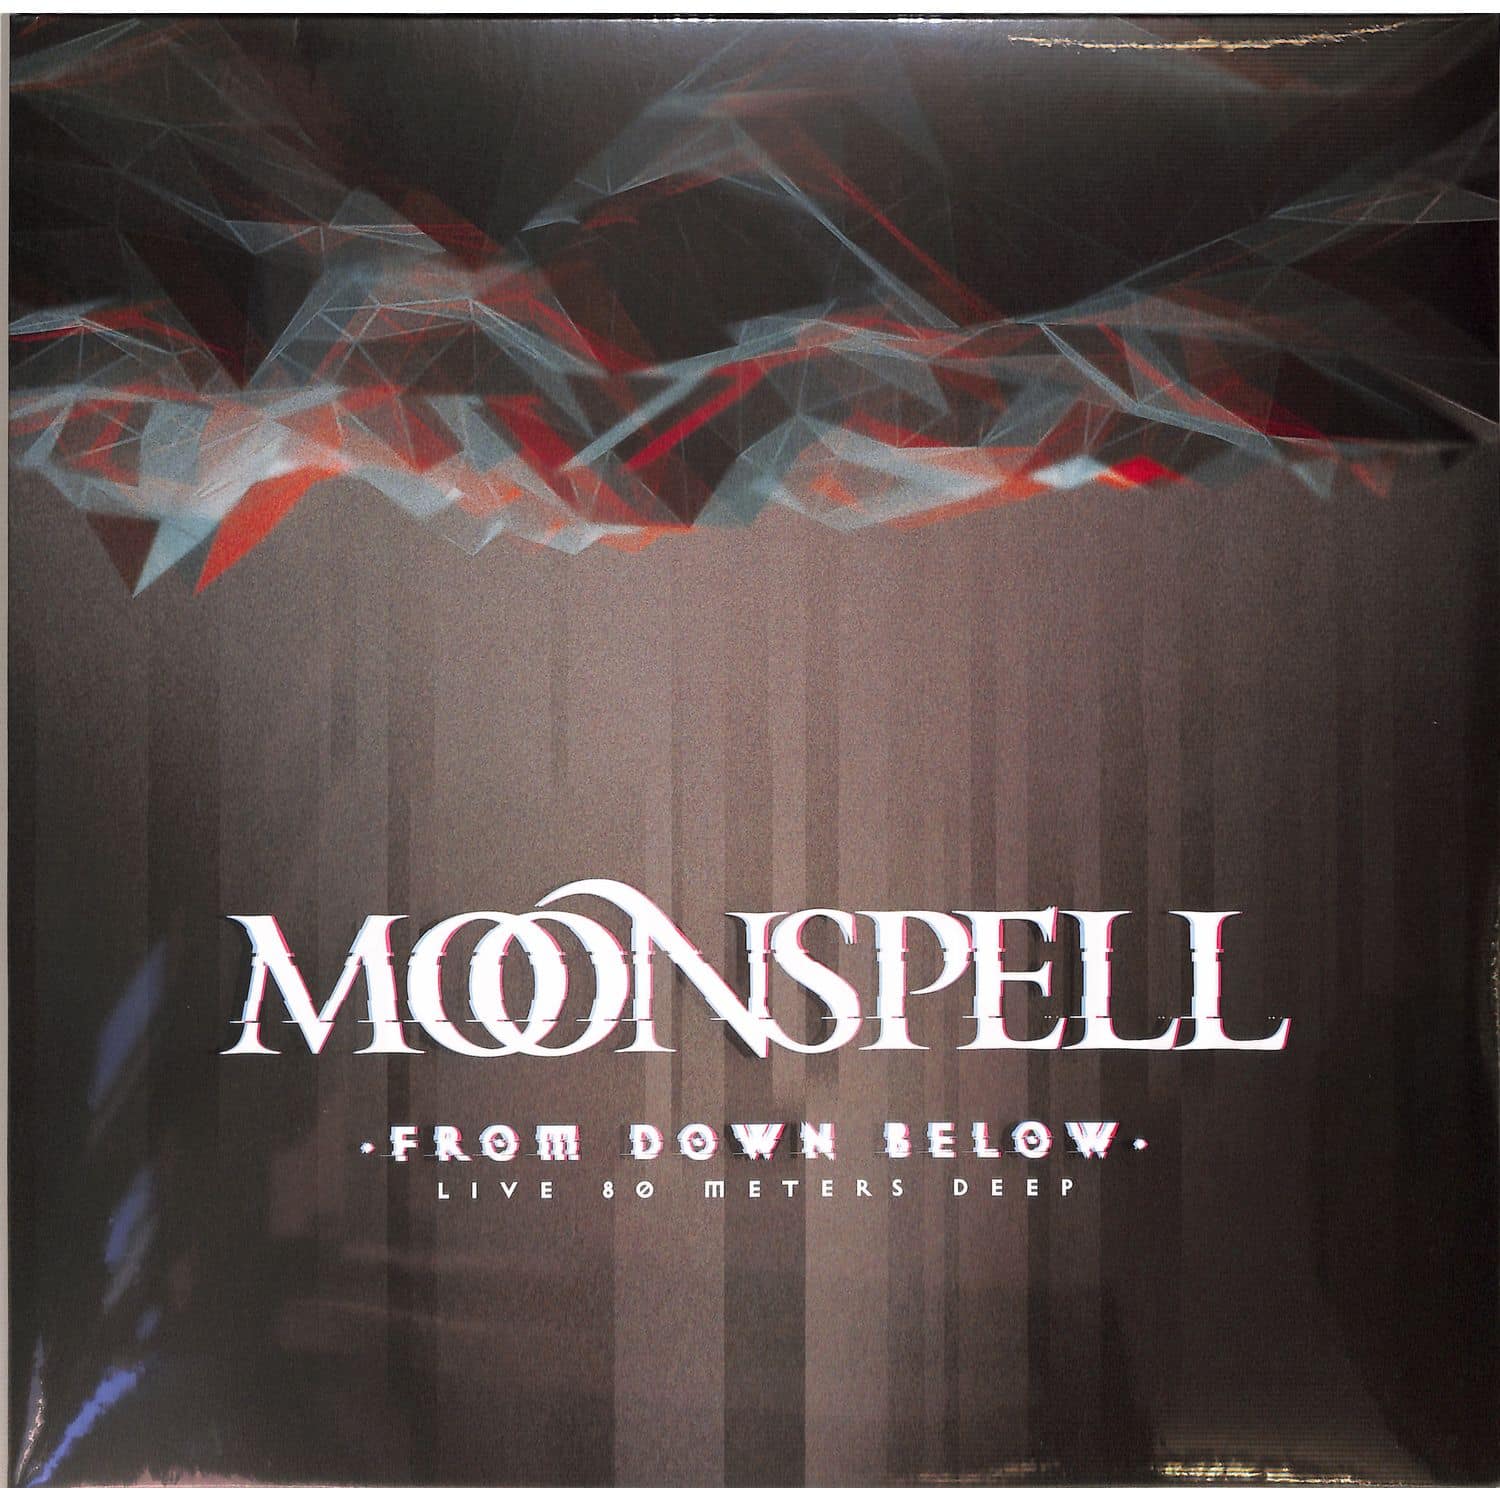 Moonspell - FROM DOWN BELOW - LIVE 80 METERS DEEP 